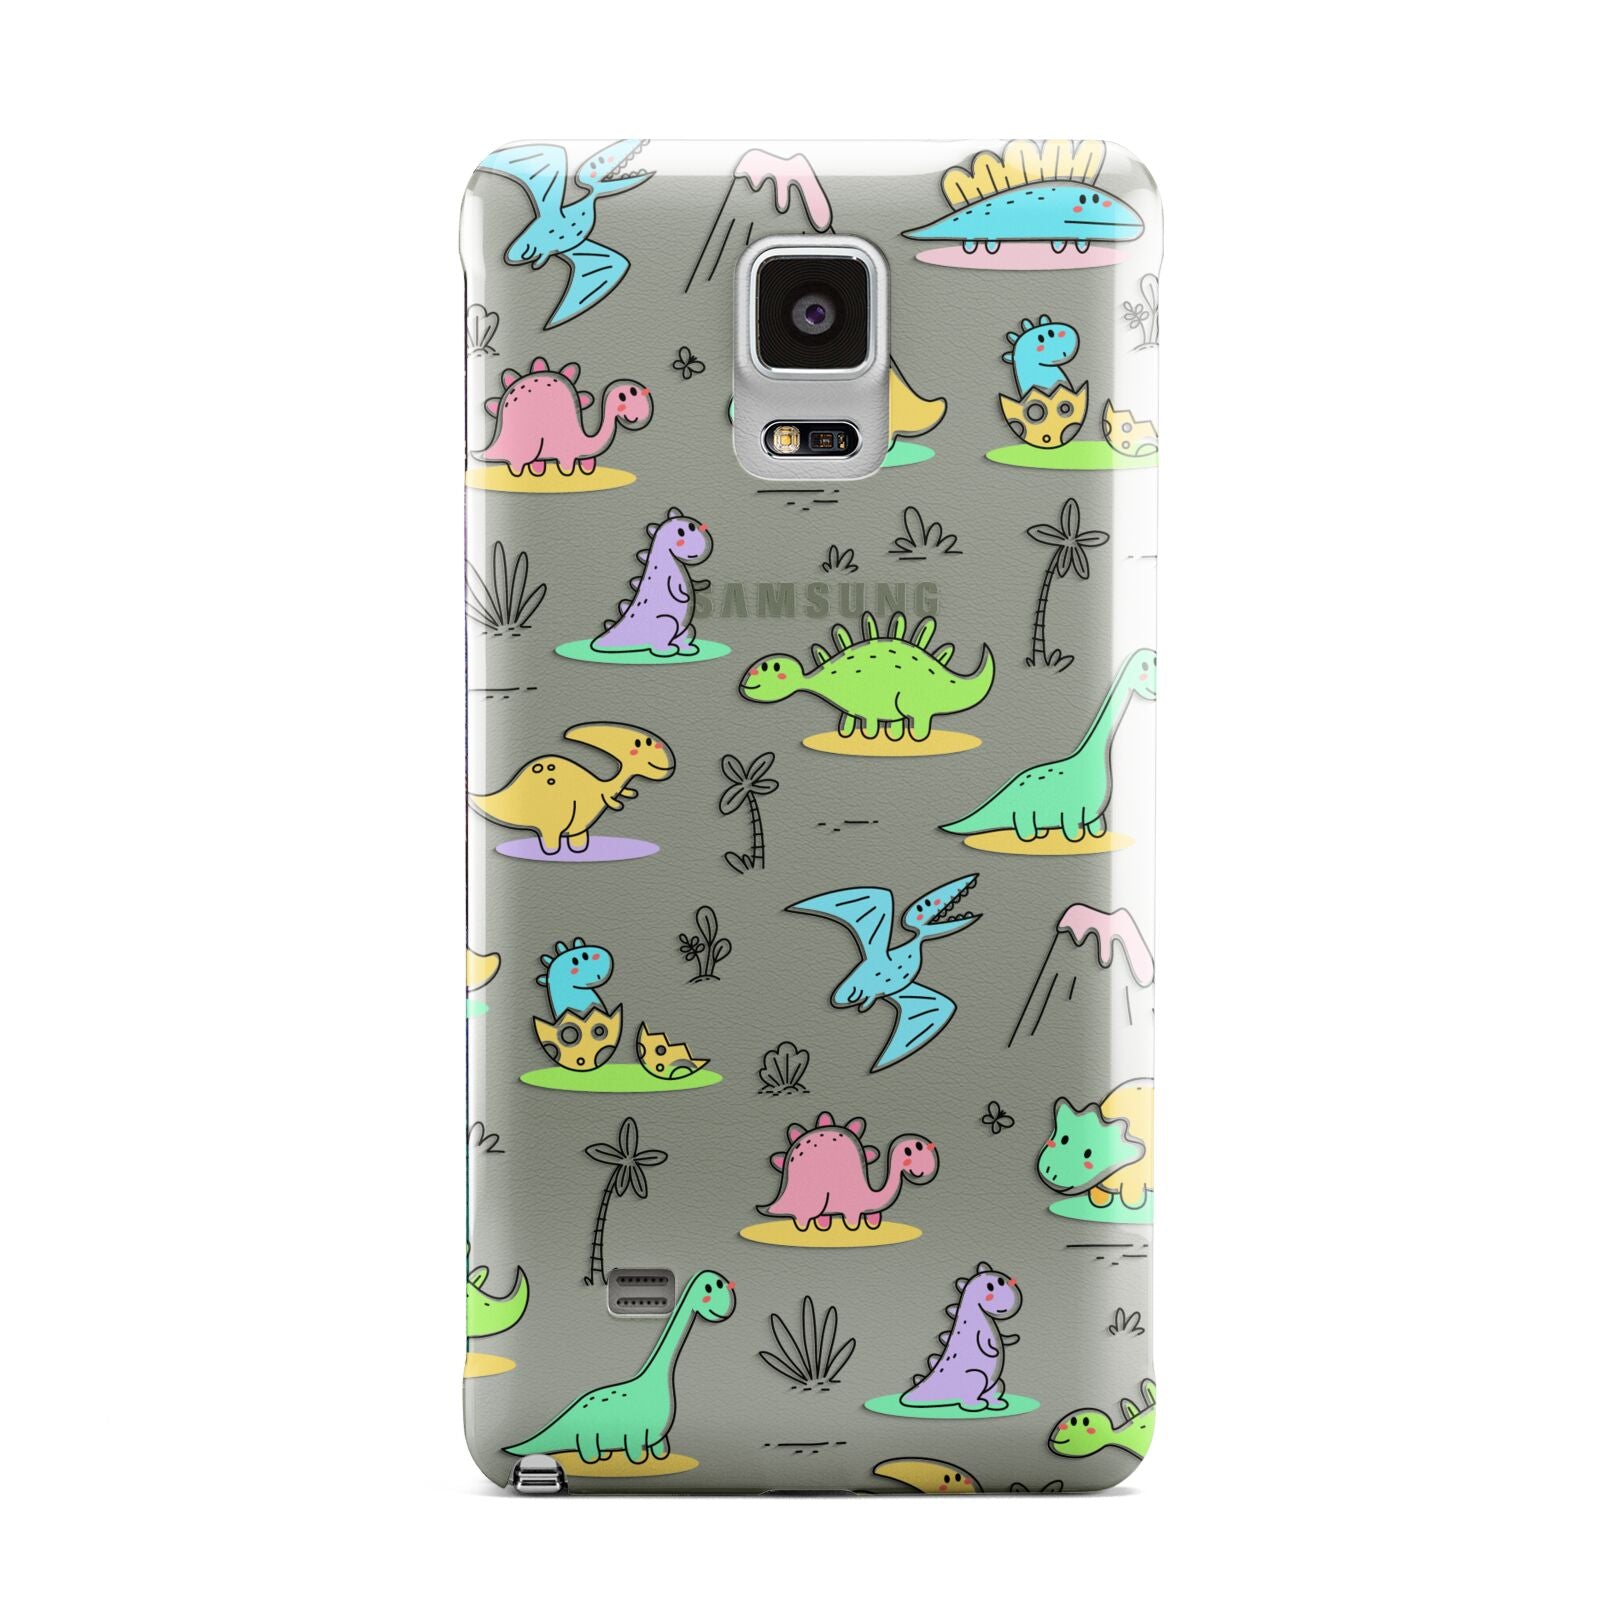 Dinosaur Samsung Galaxy Note 4 Case